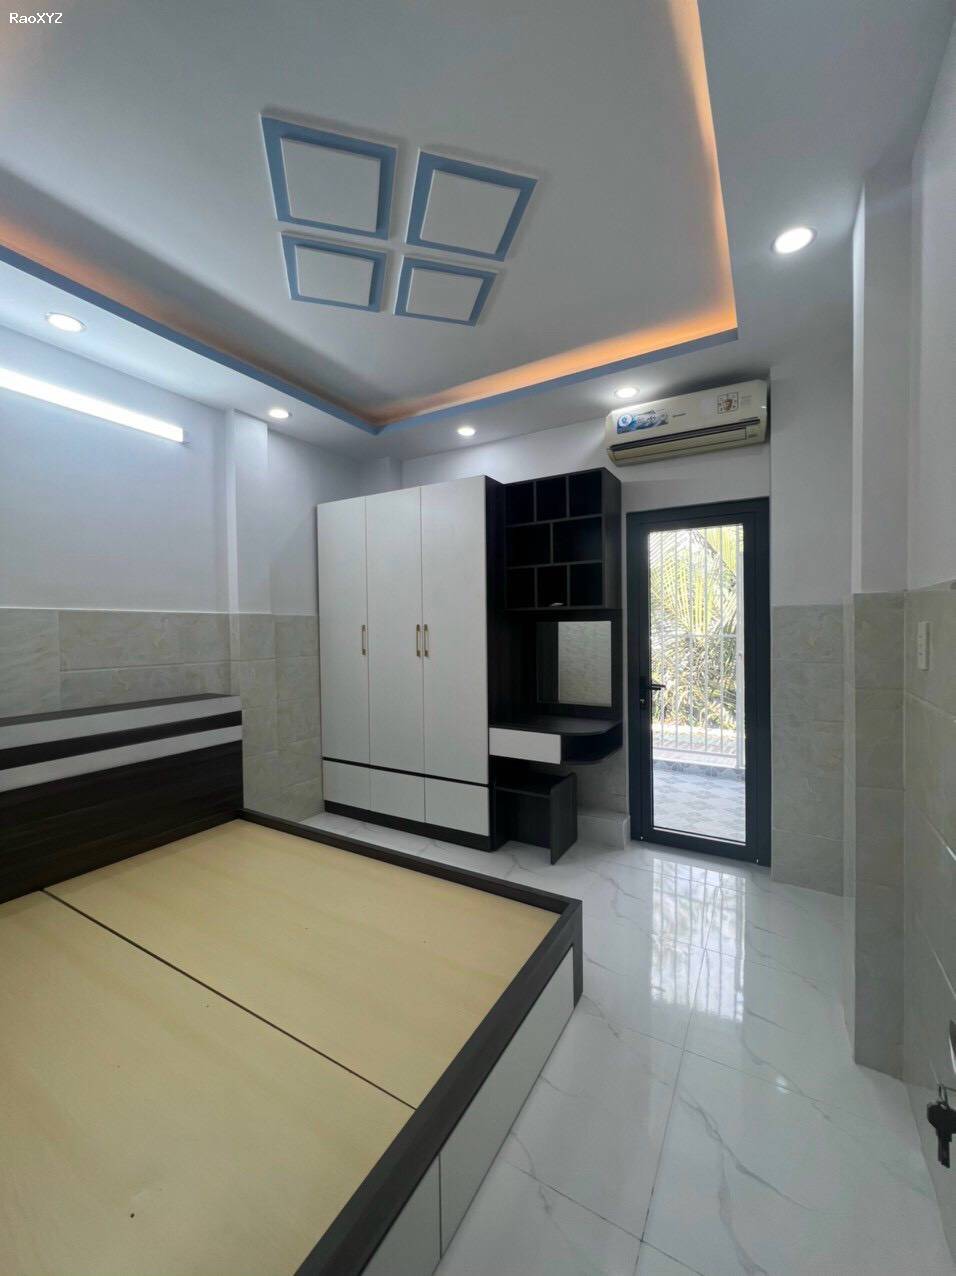 Bán Nhà Mới 2 lầu có 5 phòng ngủ khu dân cư 2266 Huỳnh Tấn Phát, Nhà Bè.